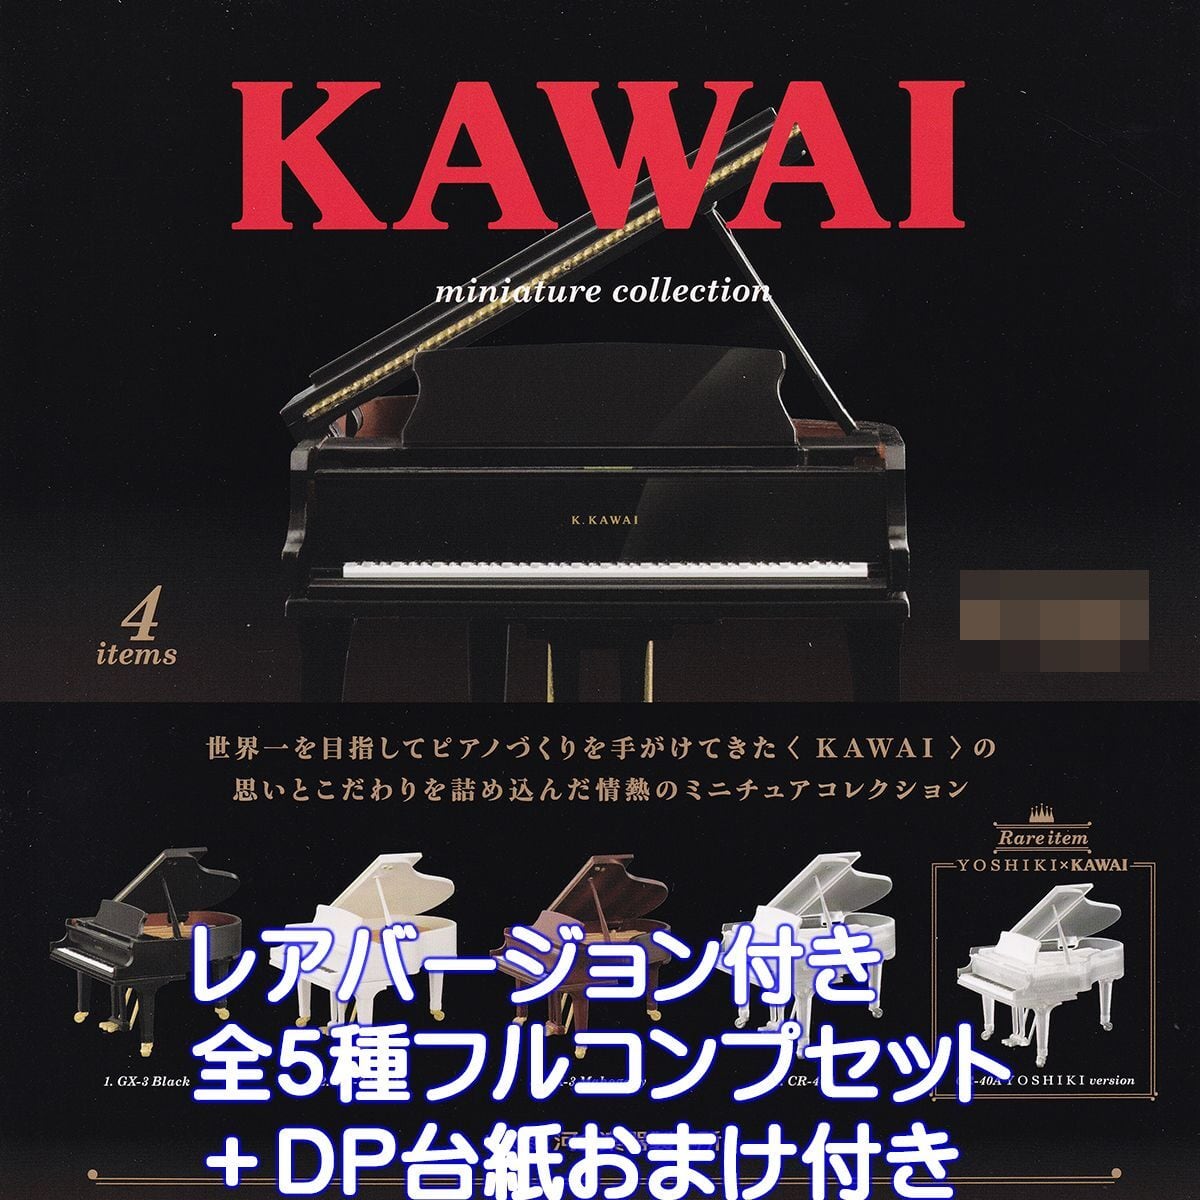 KAWAI ミニチュアコレクション ケンエレファント 【レアアイテム付き全